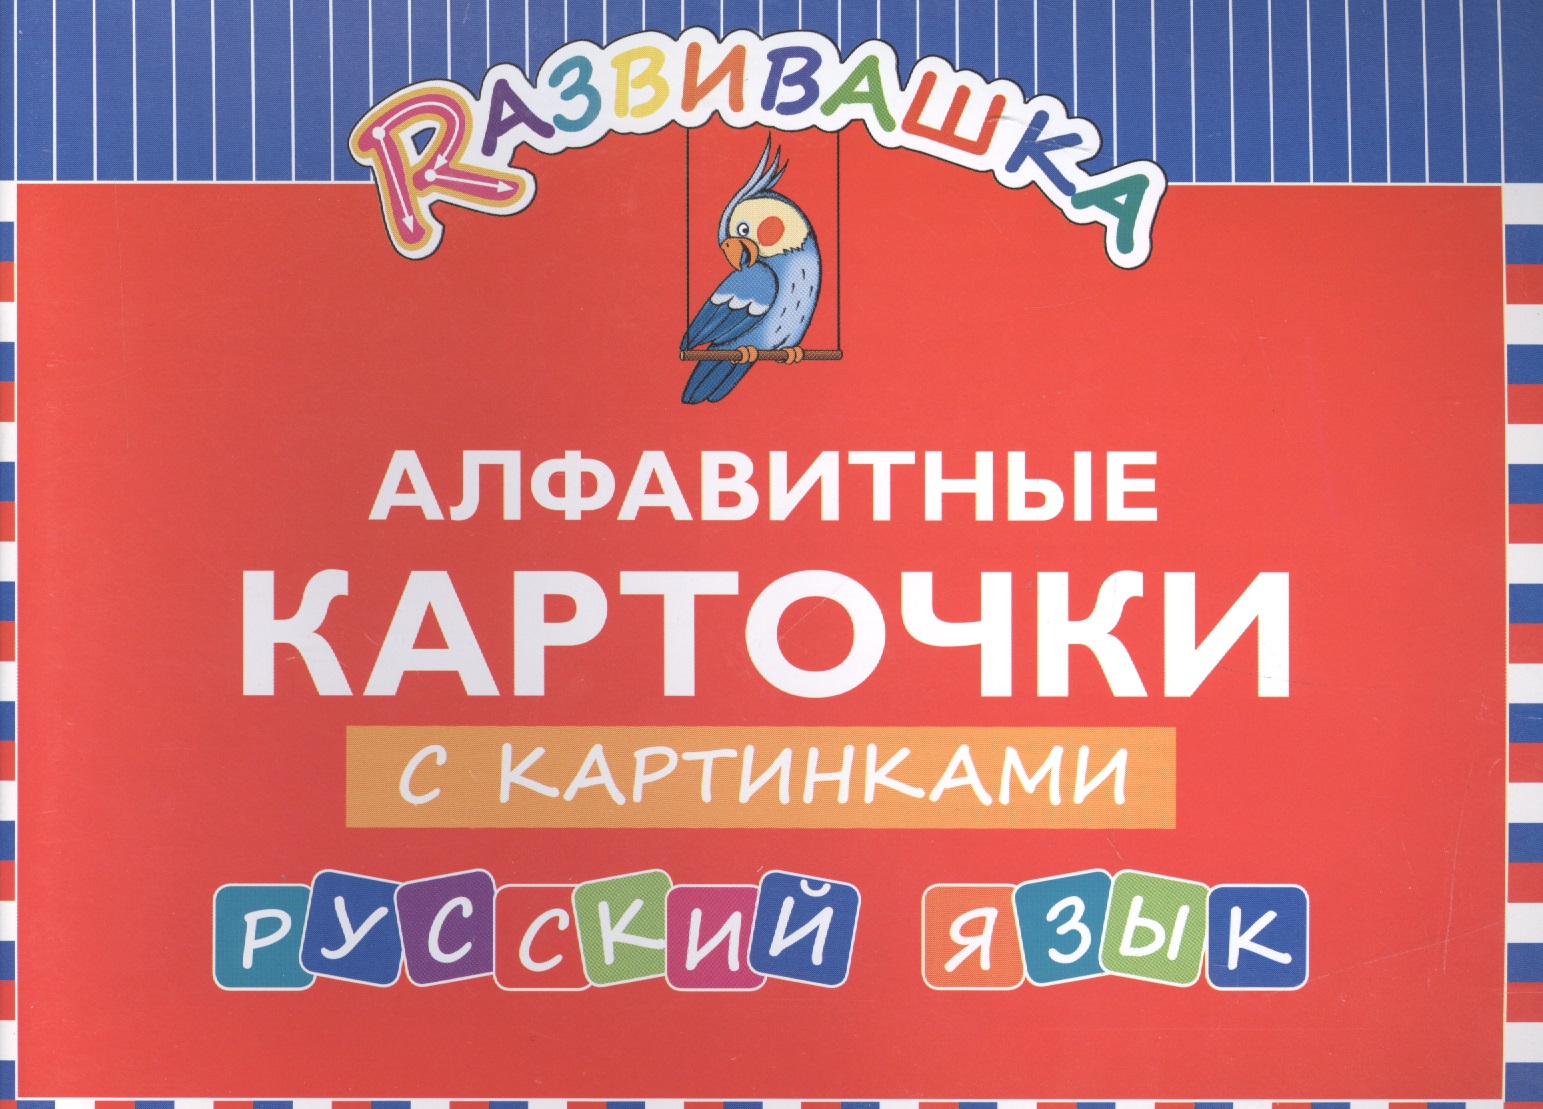 Развивашка. Алфавитные карточки с картинками. Русский язык